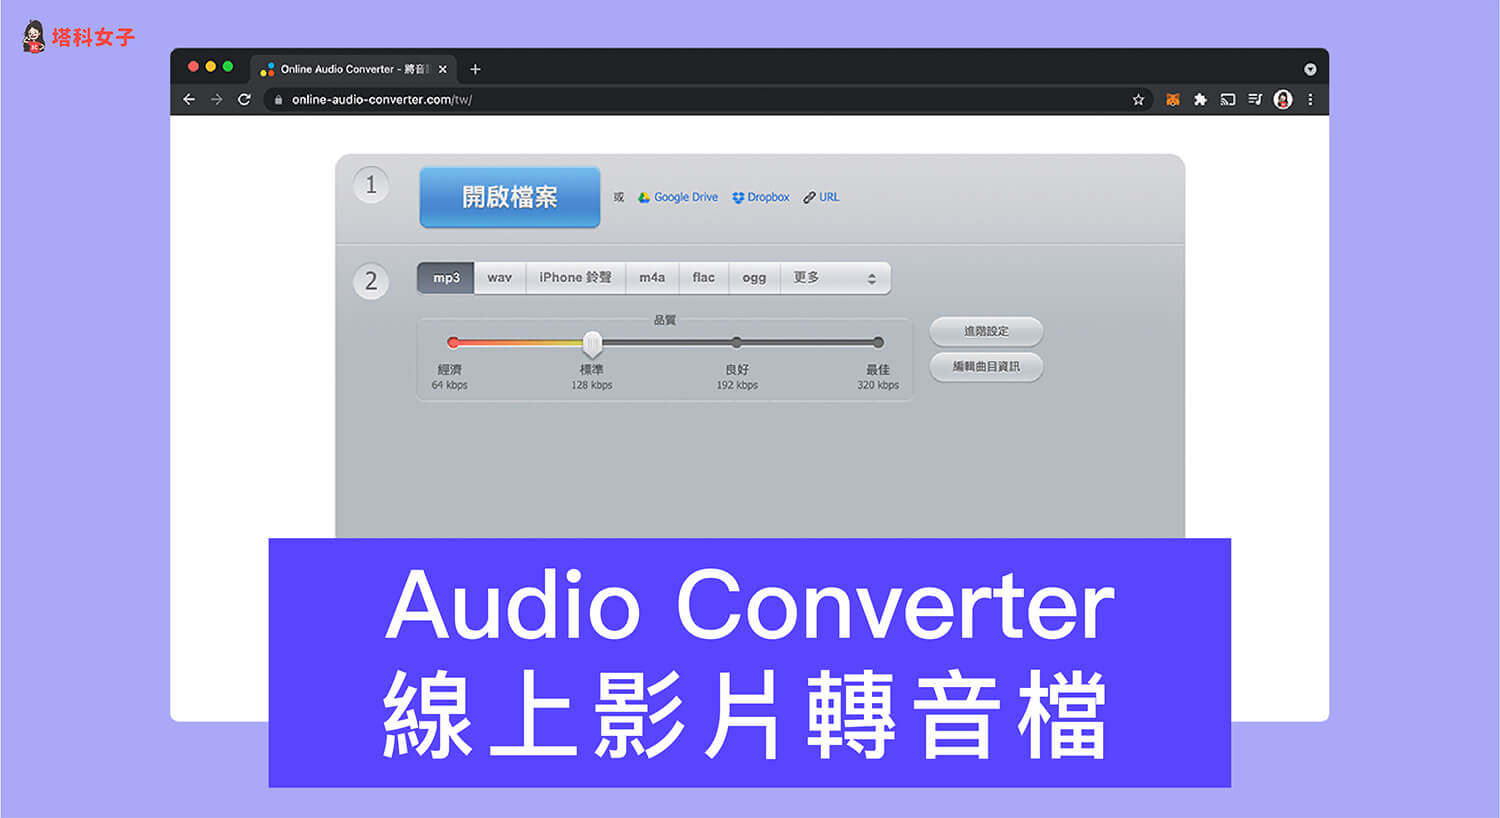 Audio Converter 影片轉音檔線上工具，一鍵將影片與聲音分離